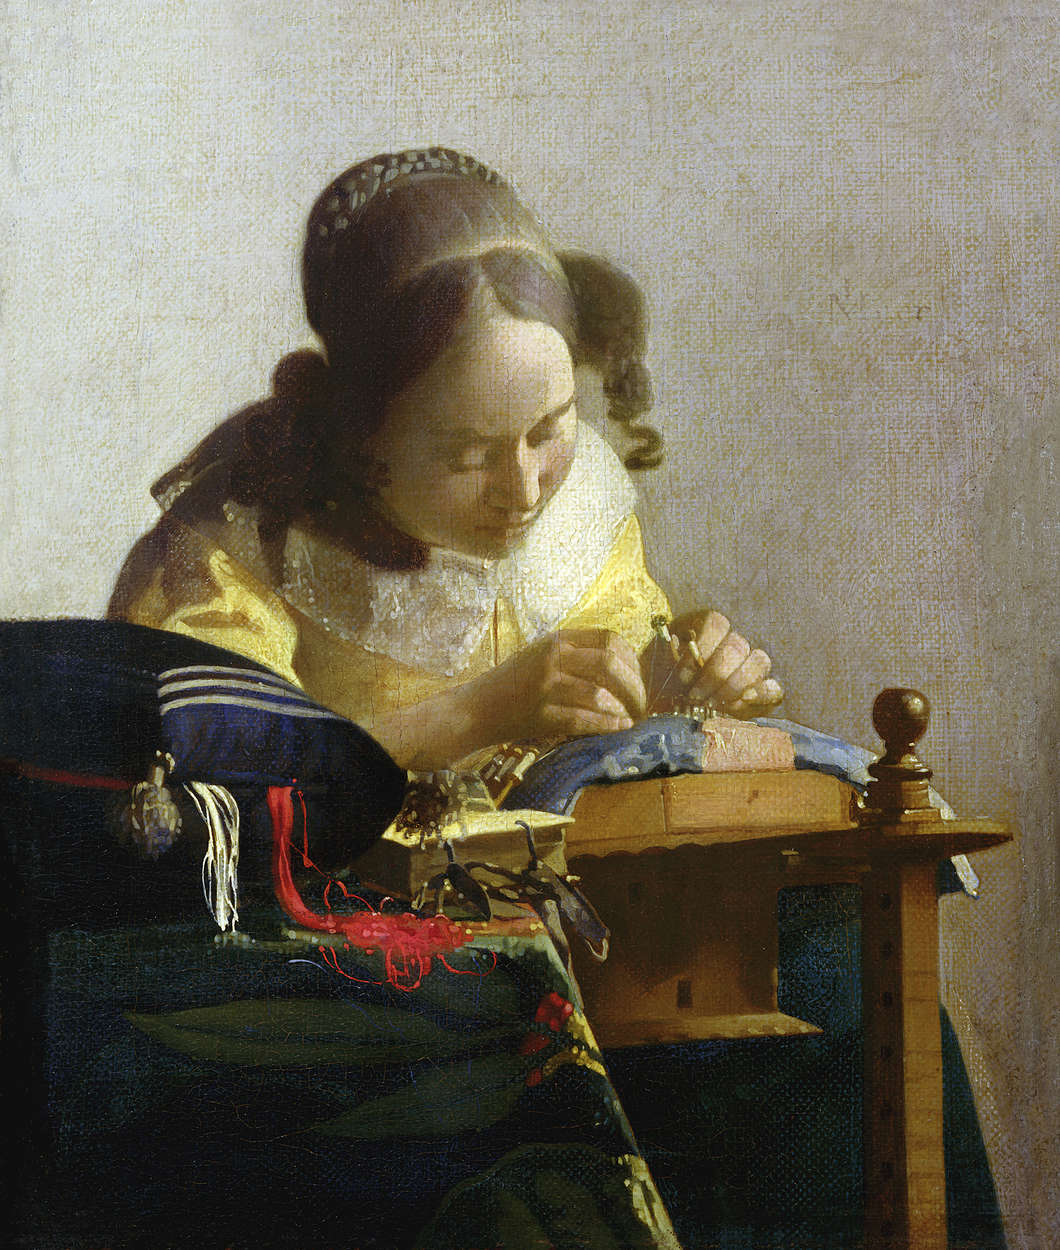             Fototapete "Die Spitzenmacher" von Jan Vermeer
        